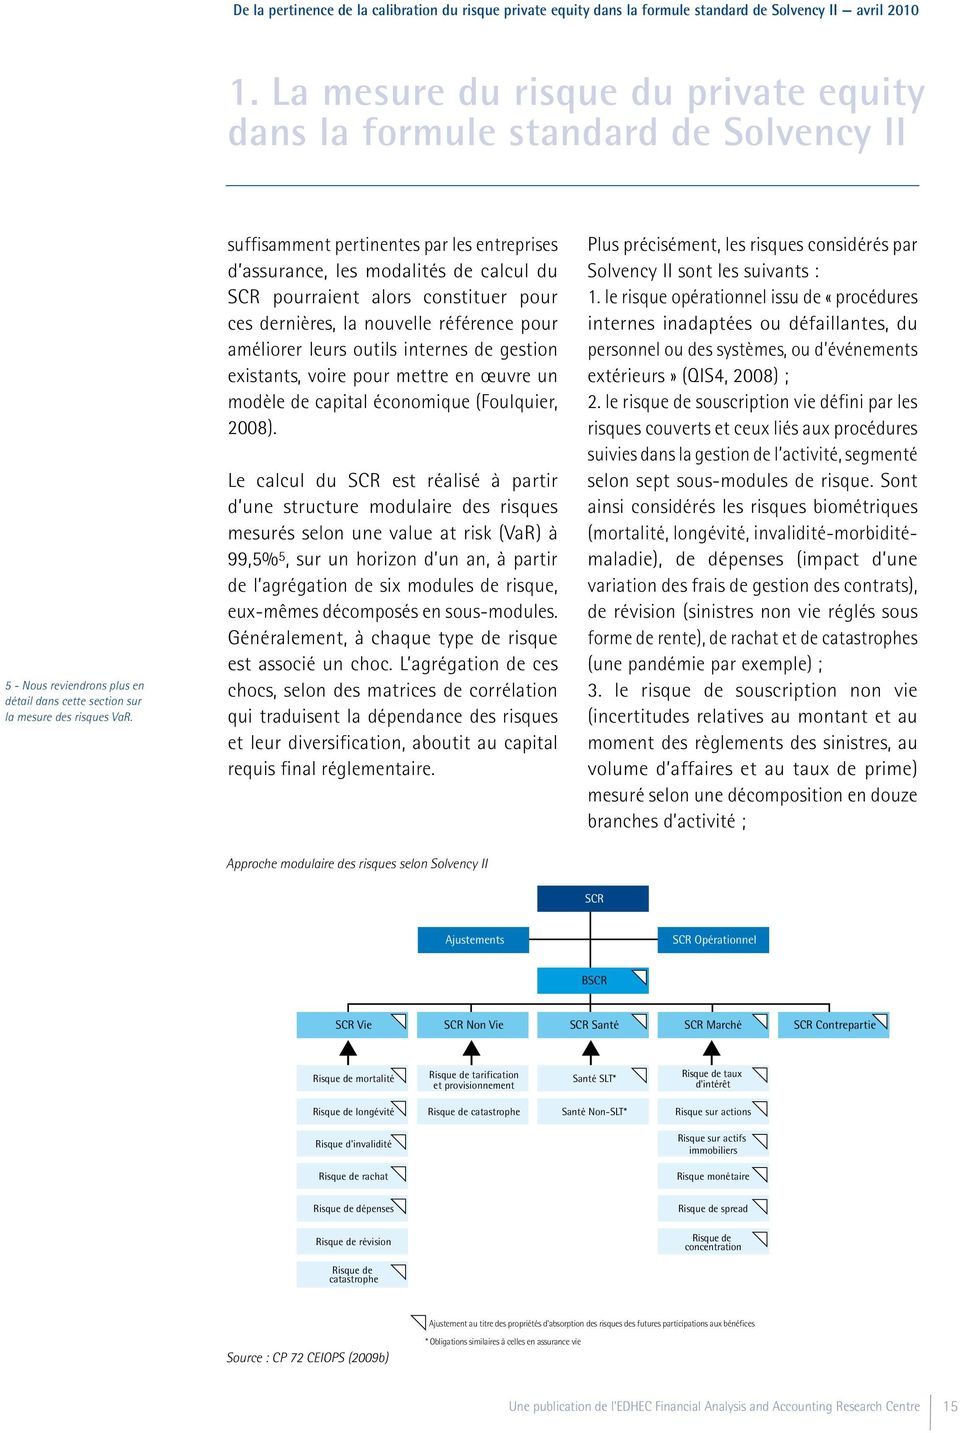 gestion existants, voire pour mettre en œuvre un modèle de capital économique (Foulquier, 2008).